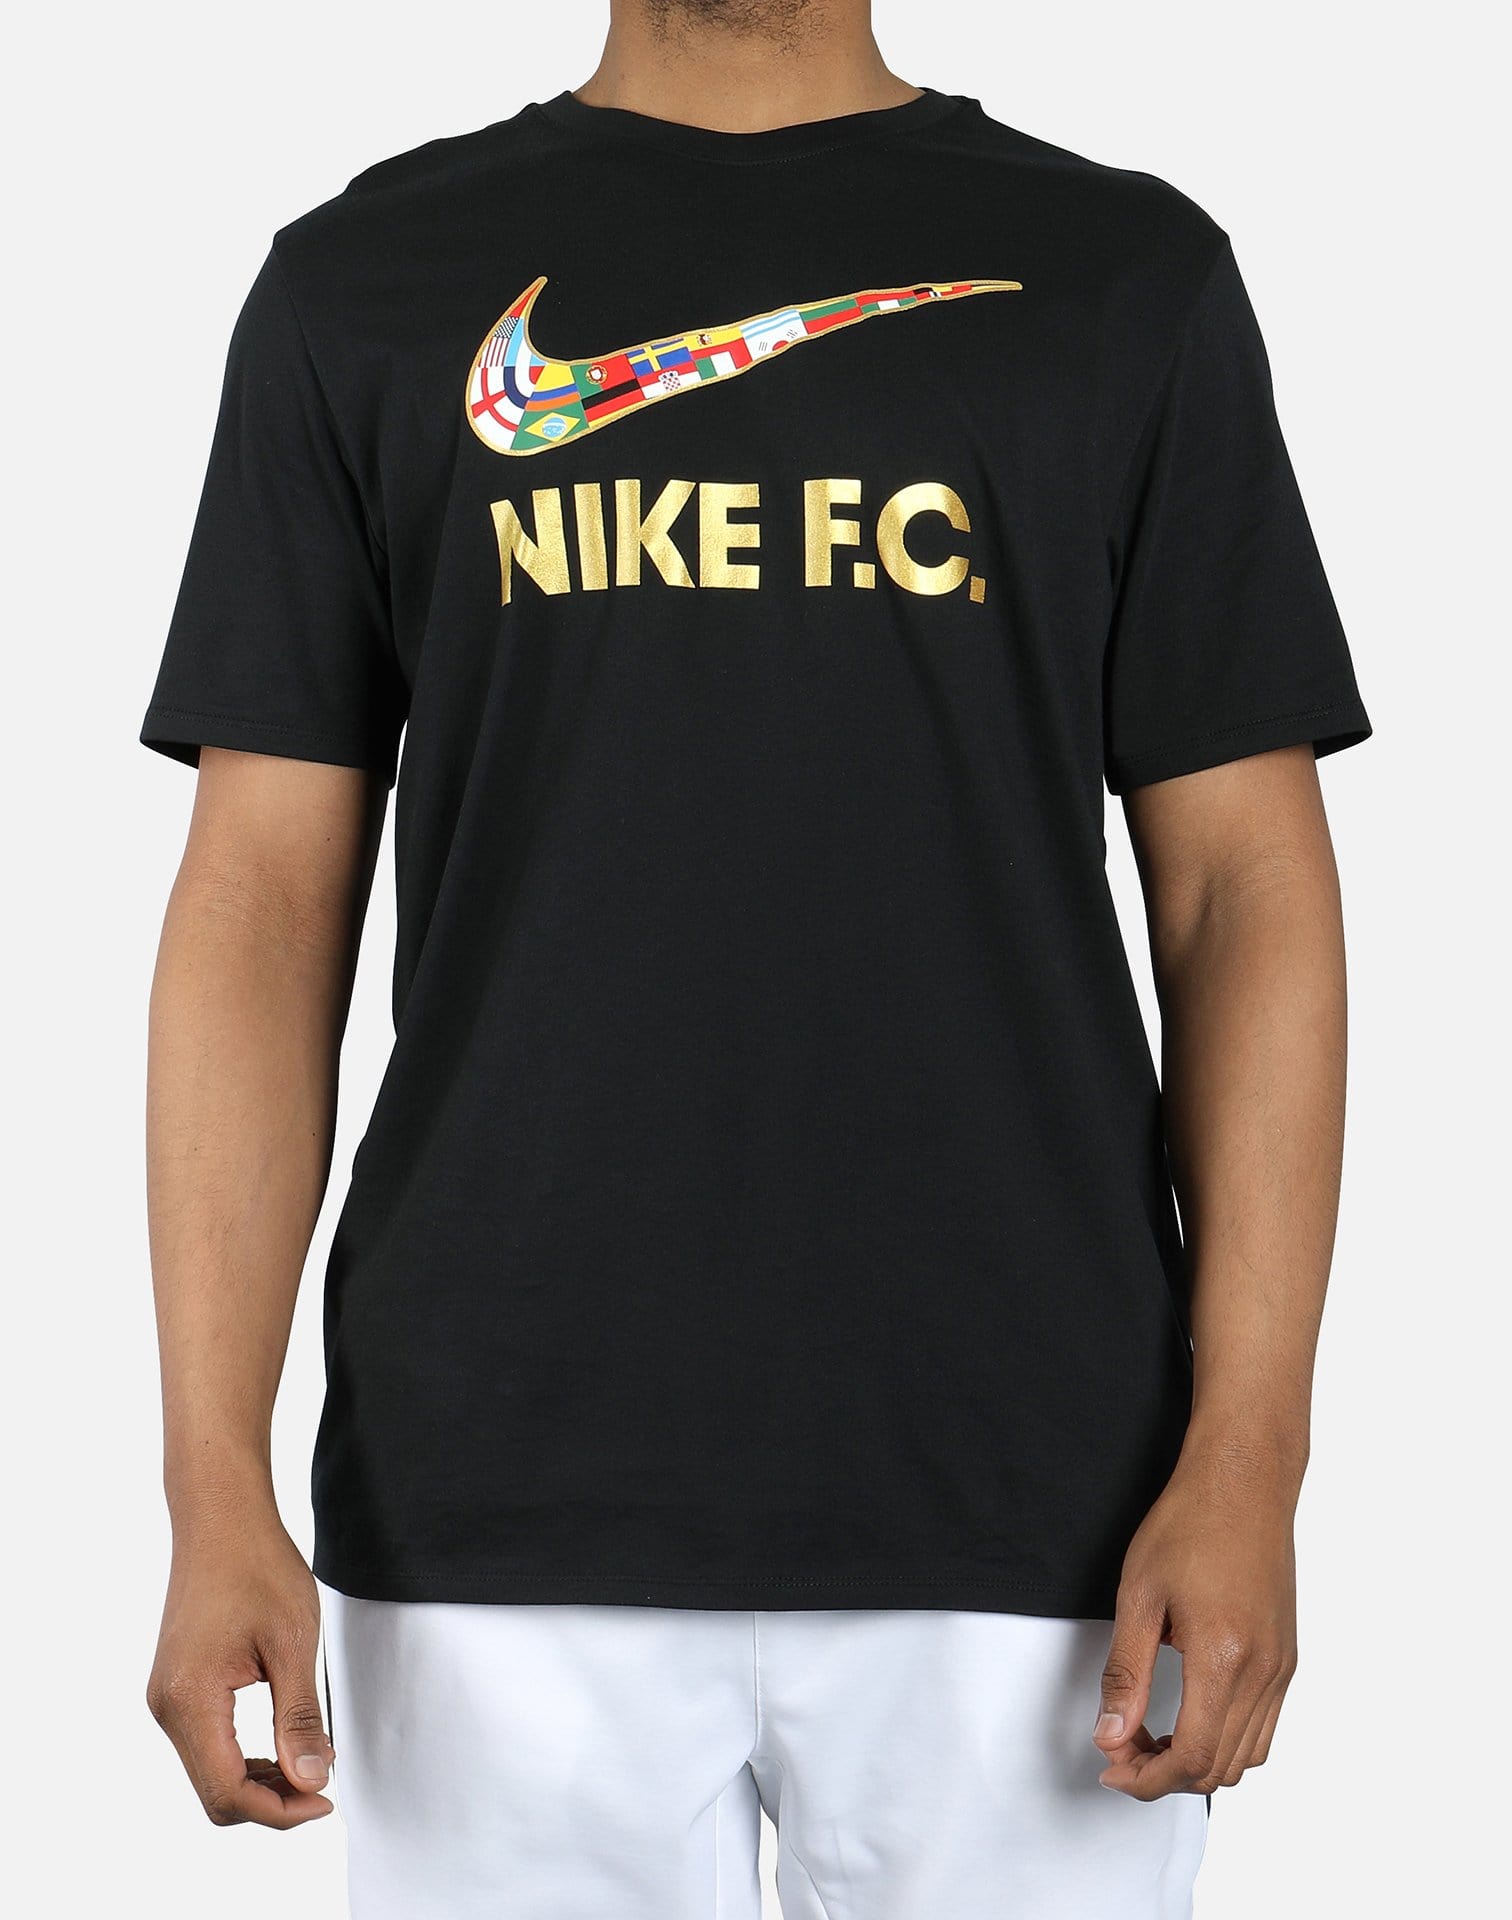 Nike F.C. FLAG – DTLR